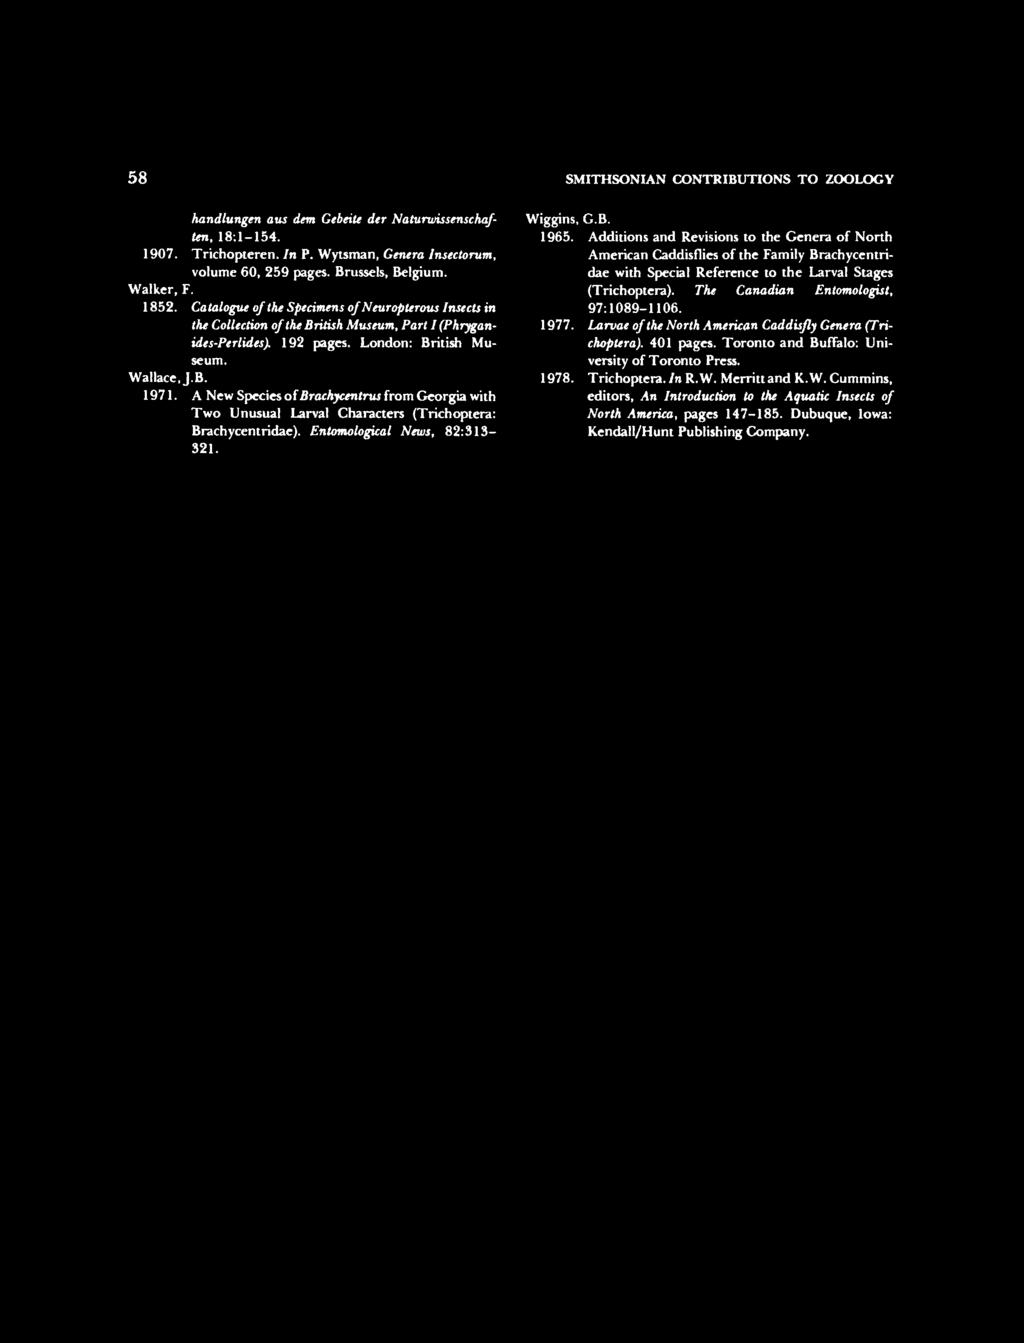 58 SMITHSONIAN CONTRIBUTIONS TO ZOOLOGY handlungen aus dent GebeiU der Naturwissenschaften, 18:1-154. 1907. Trichopteren. In P. Wytsman, Genera Insectorum, volume 60, 259 pages. Brussels, Belgium.